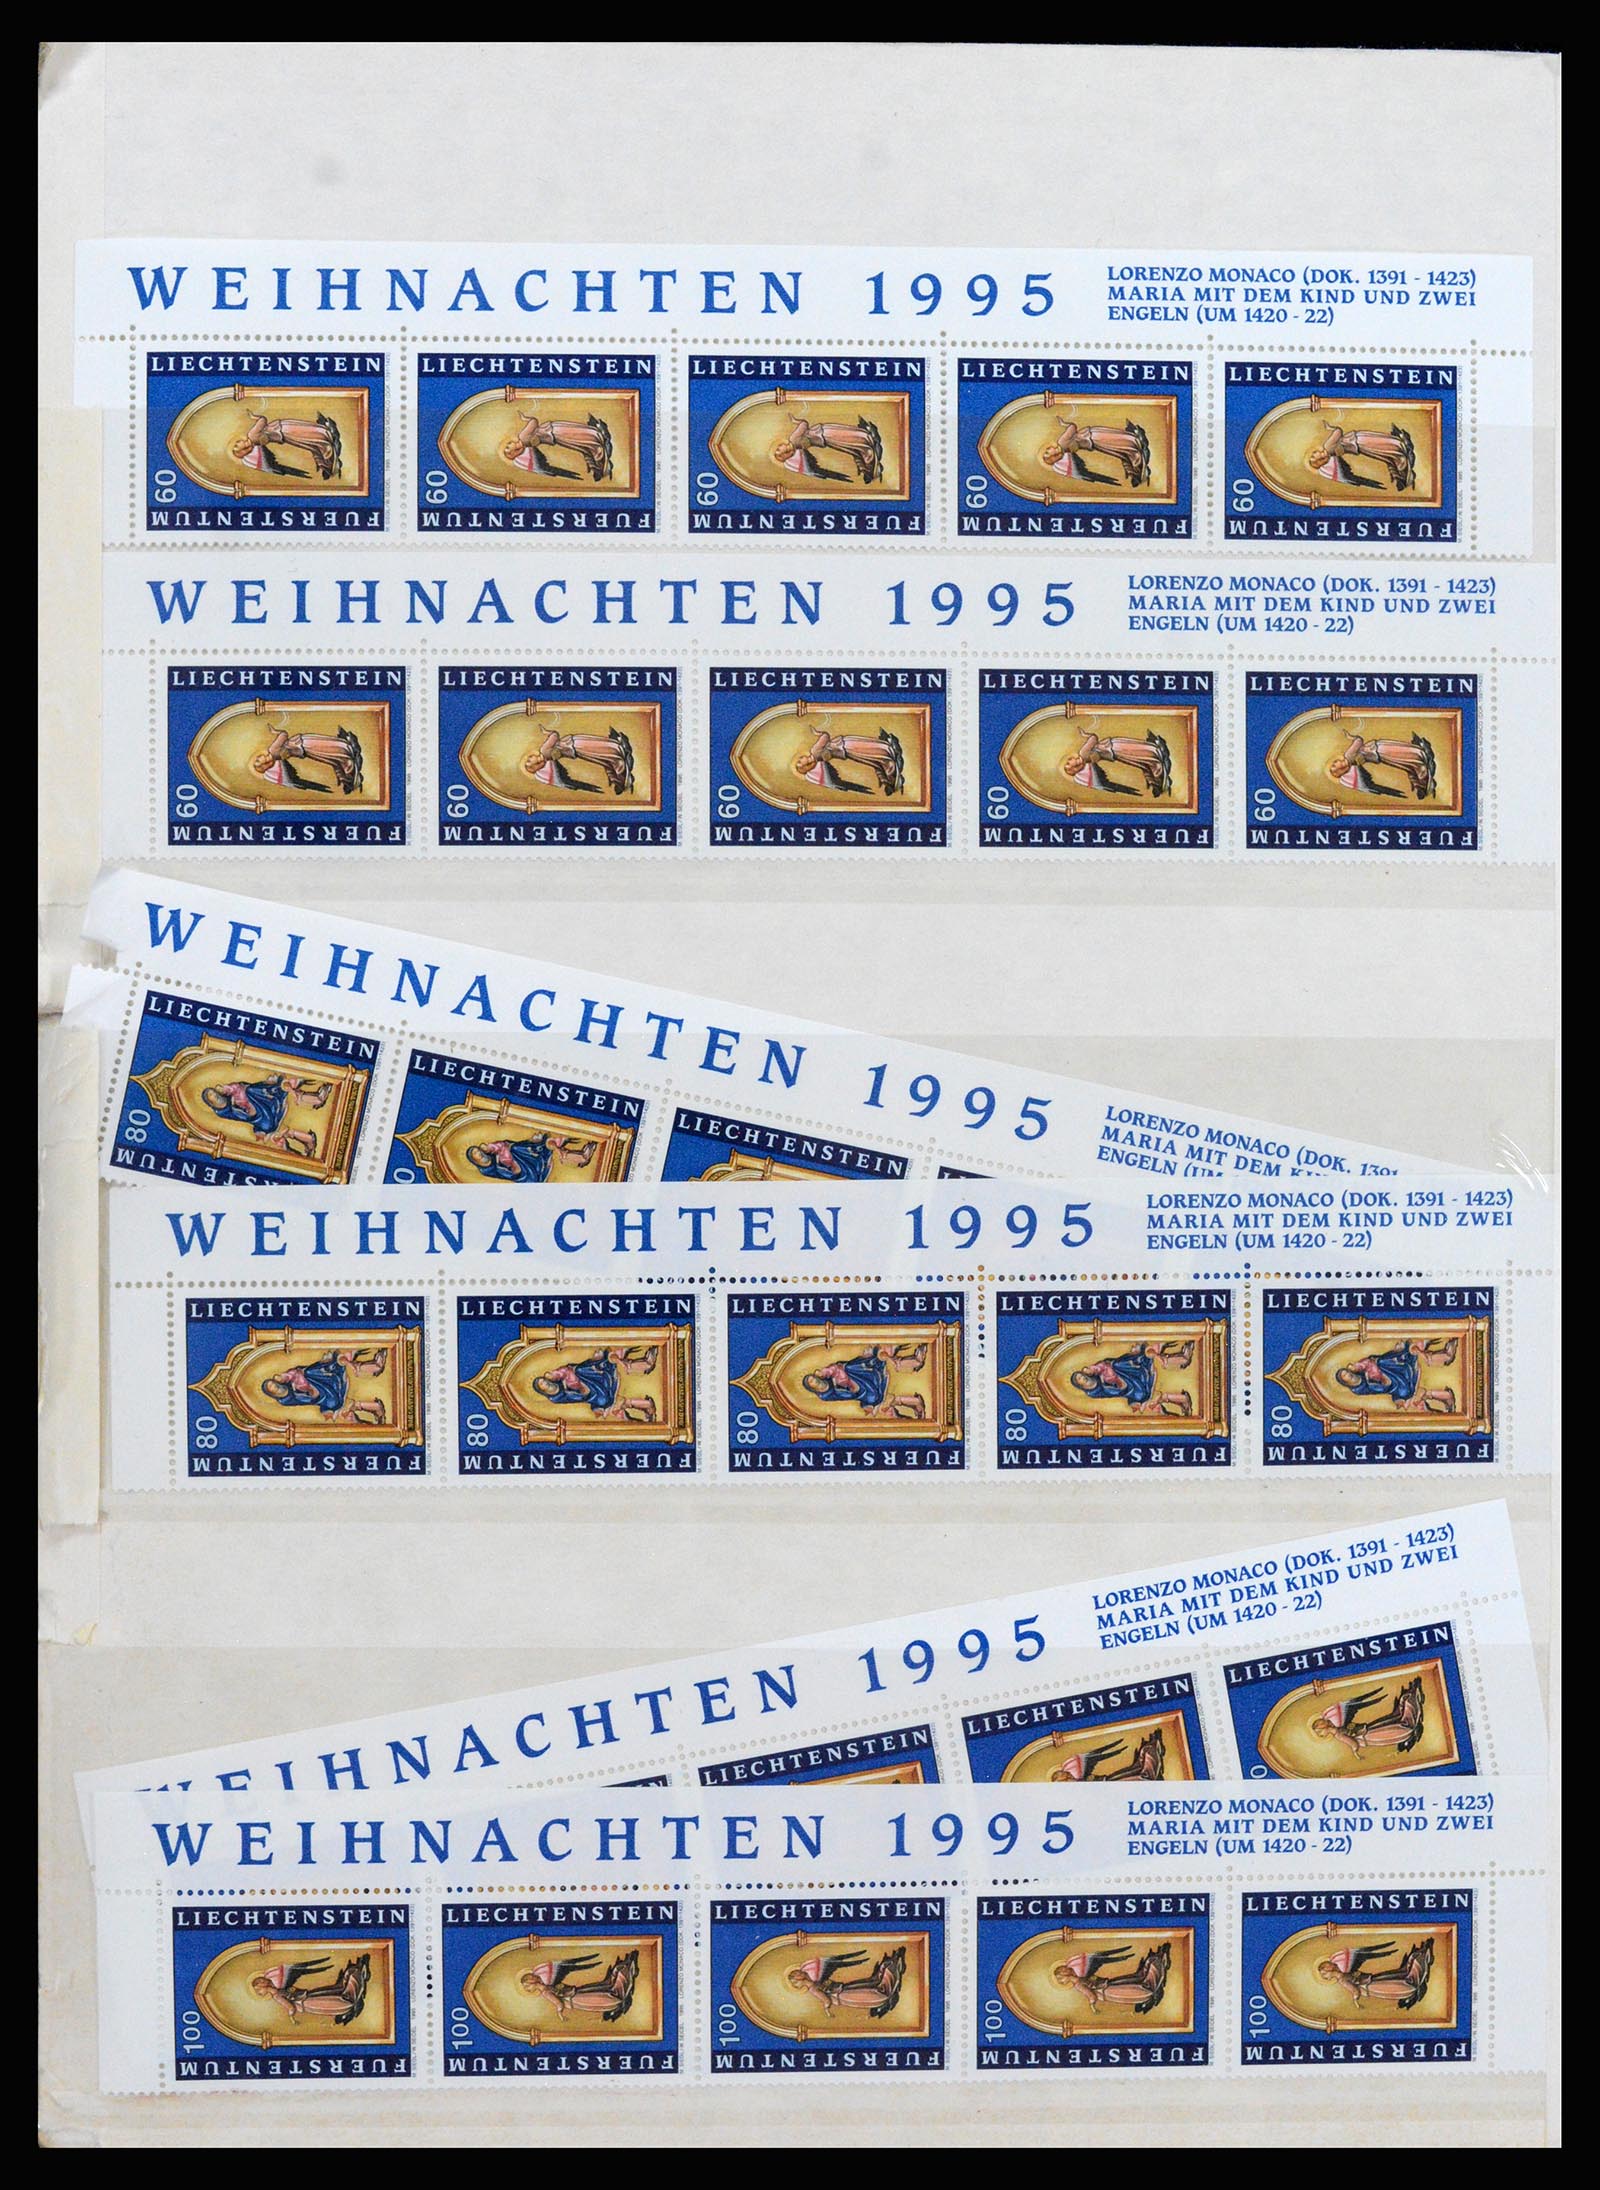 37261 120 - Stamp collection 37261 Liechtenstein 1961-1995.